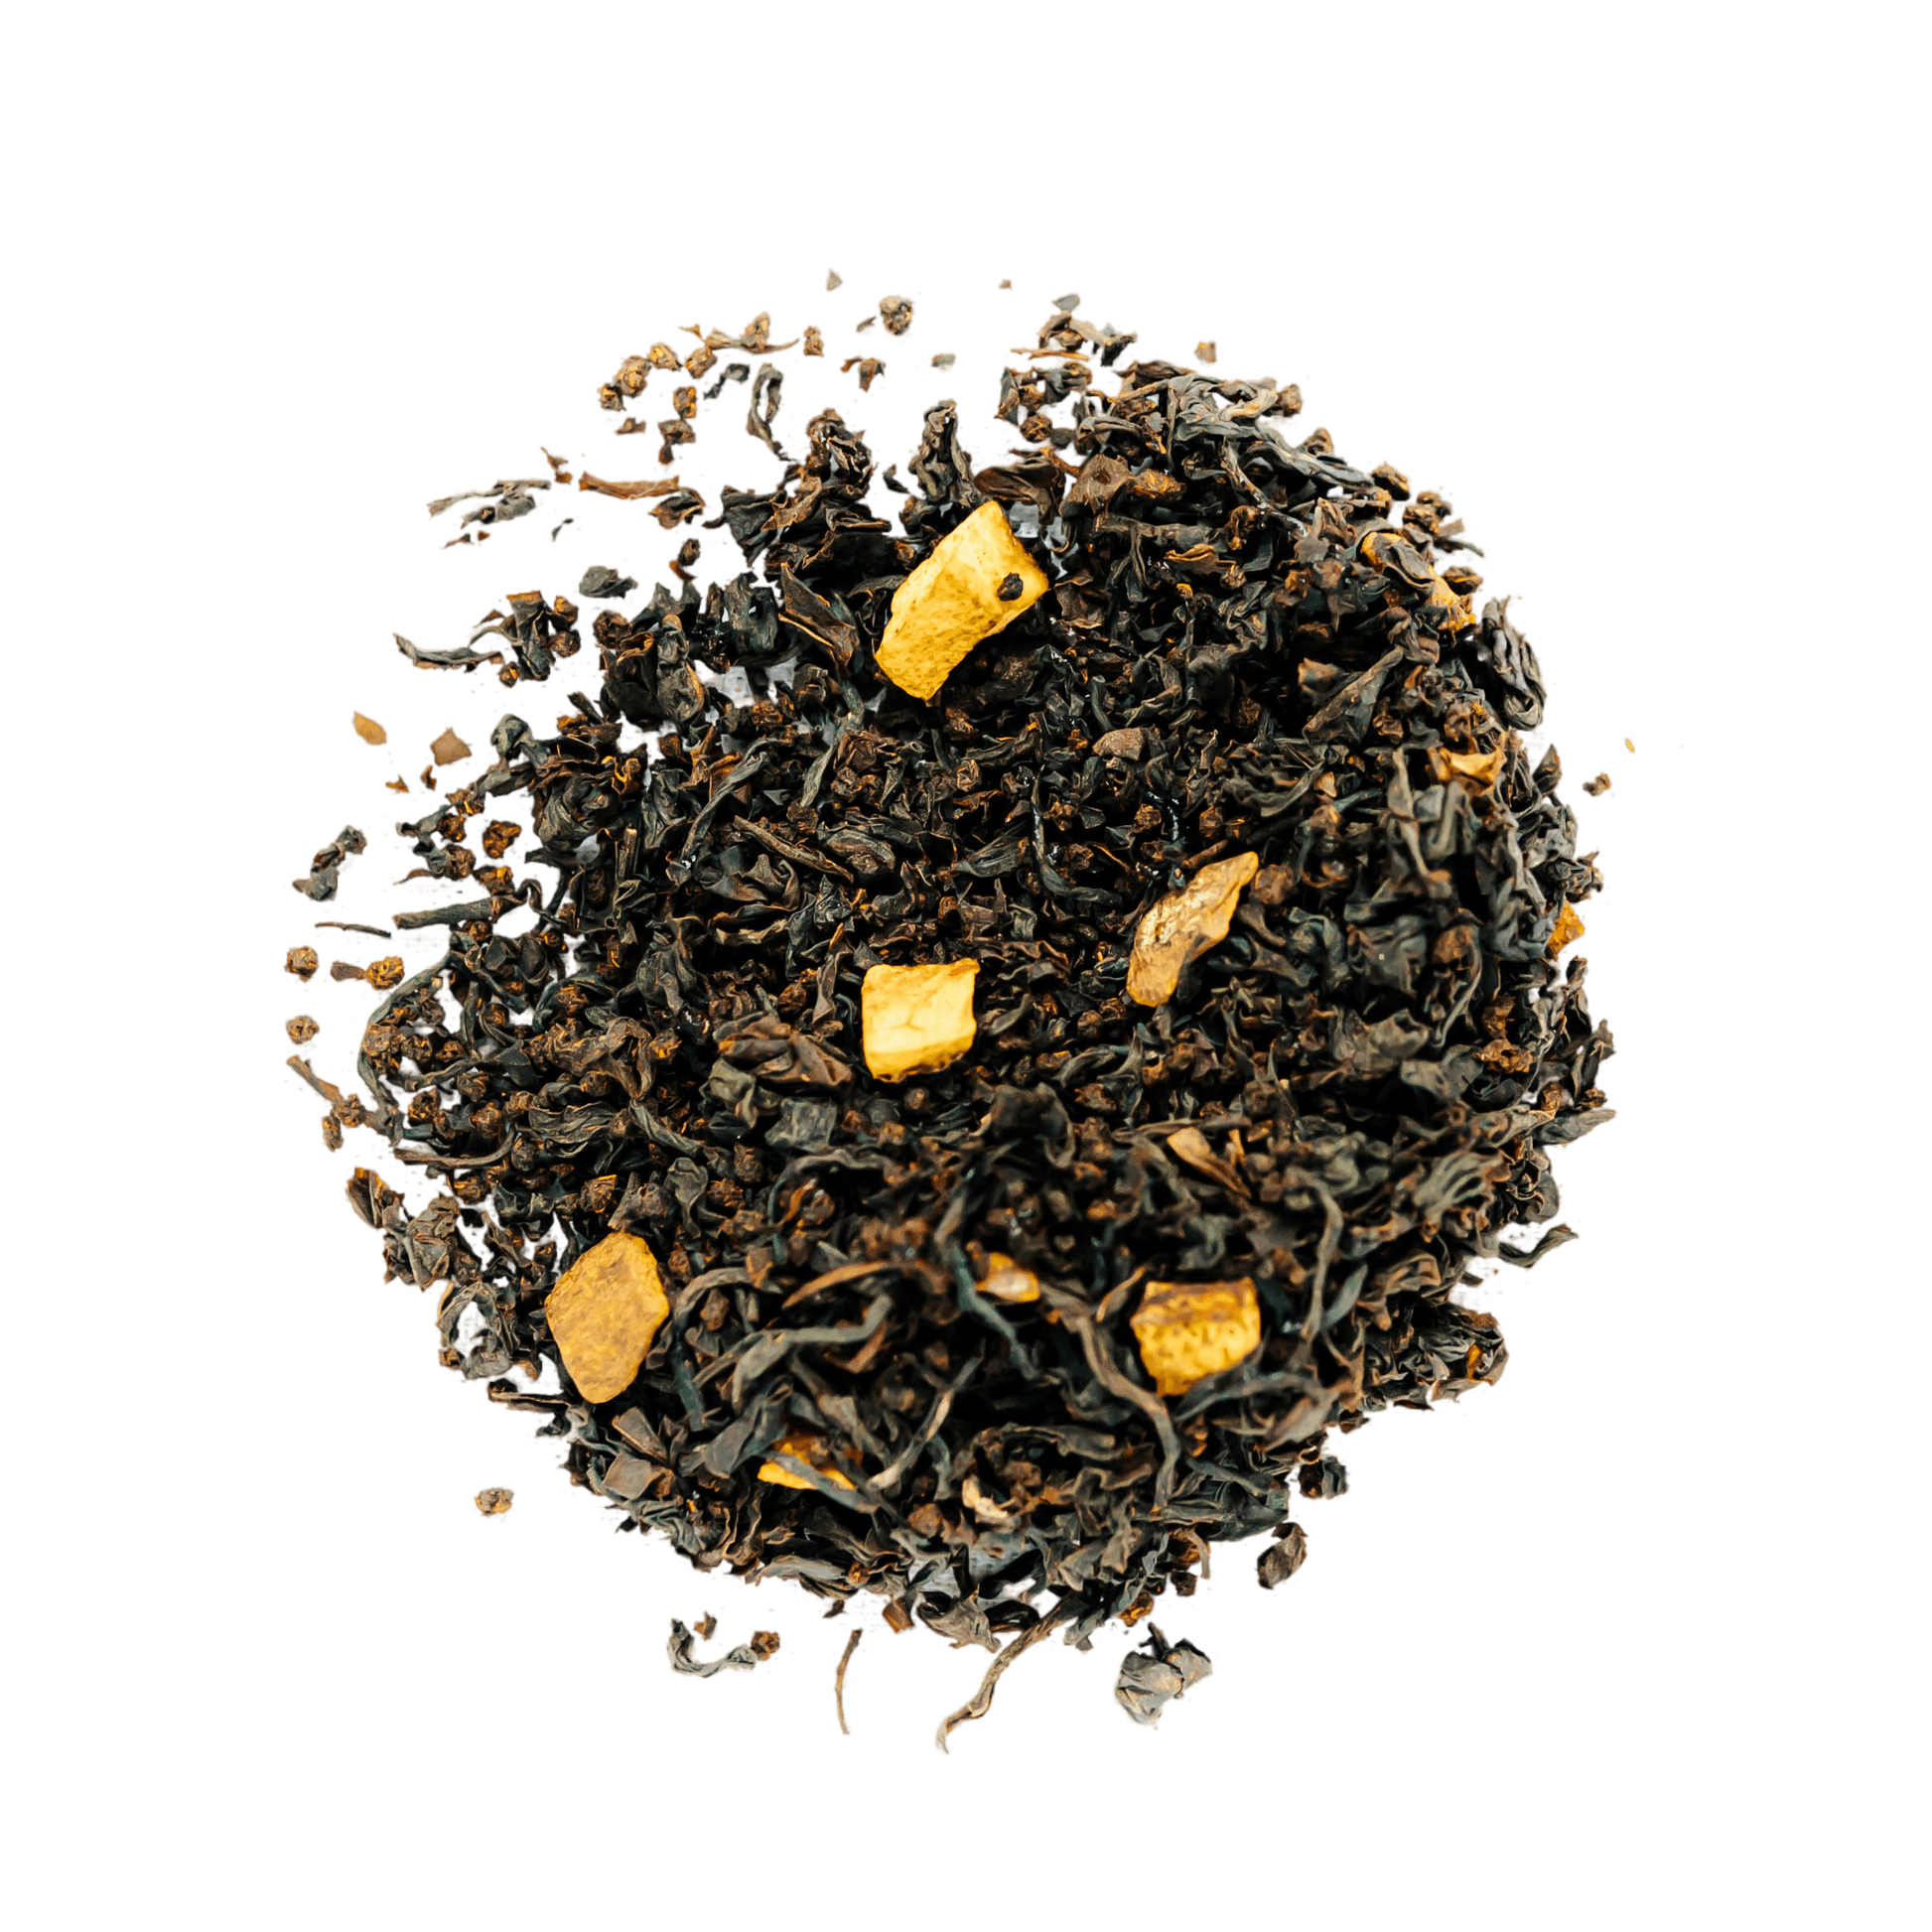 Spiced Orange Black Tea Loose Leaf Tea leaves sit on a white surface